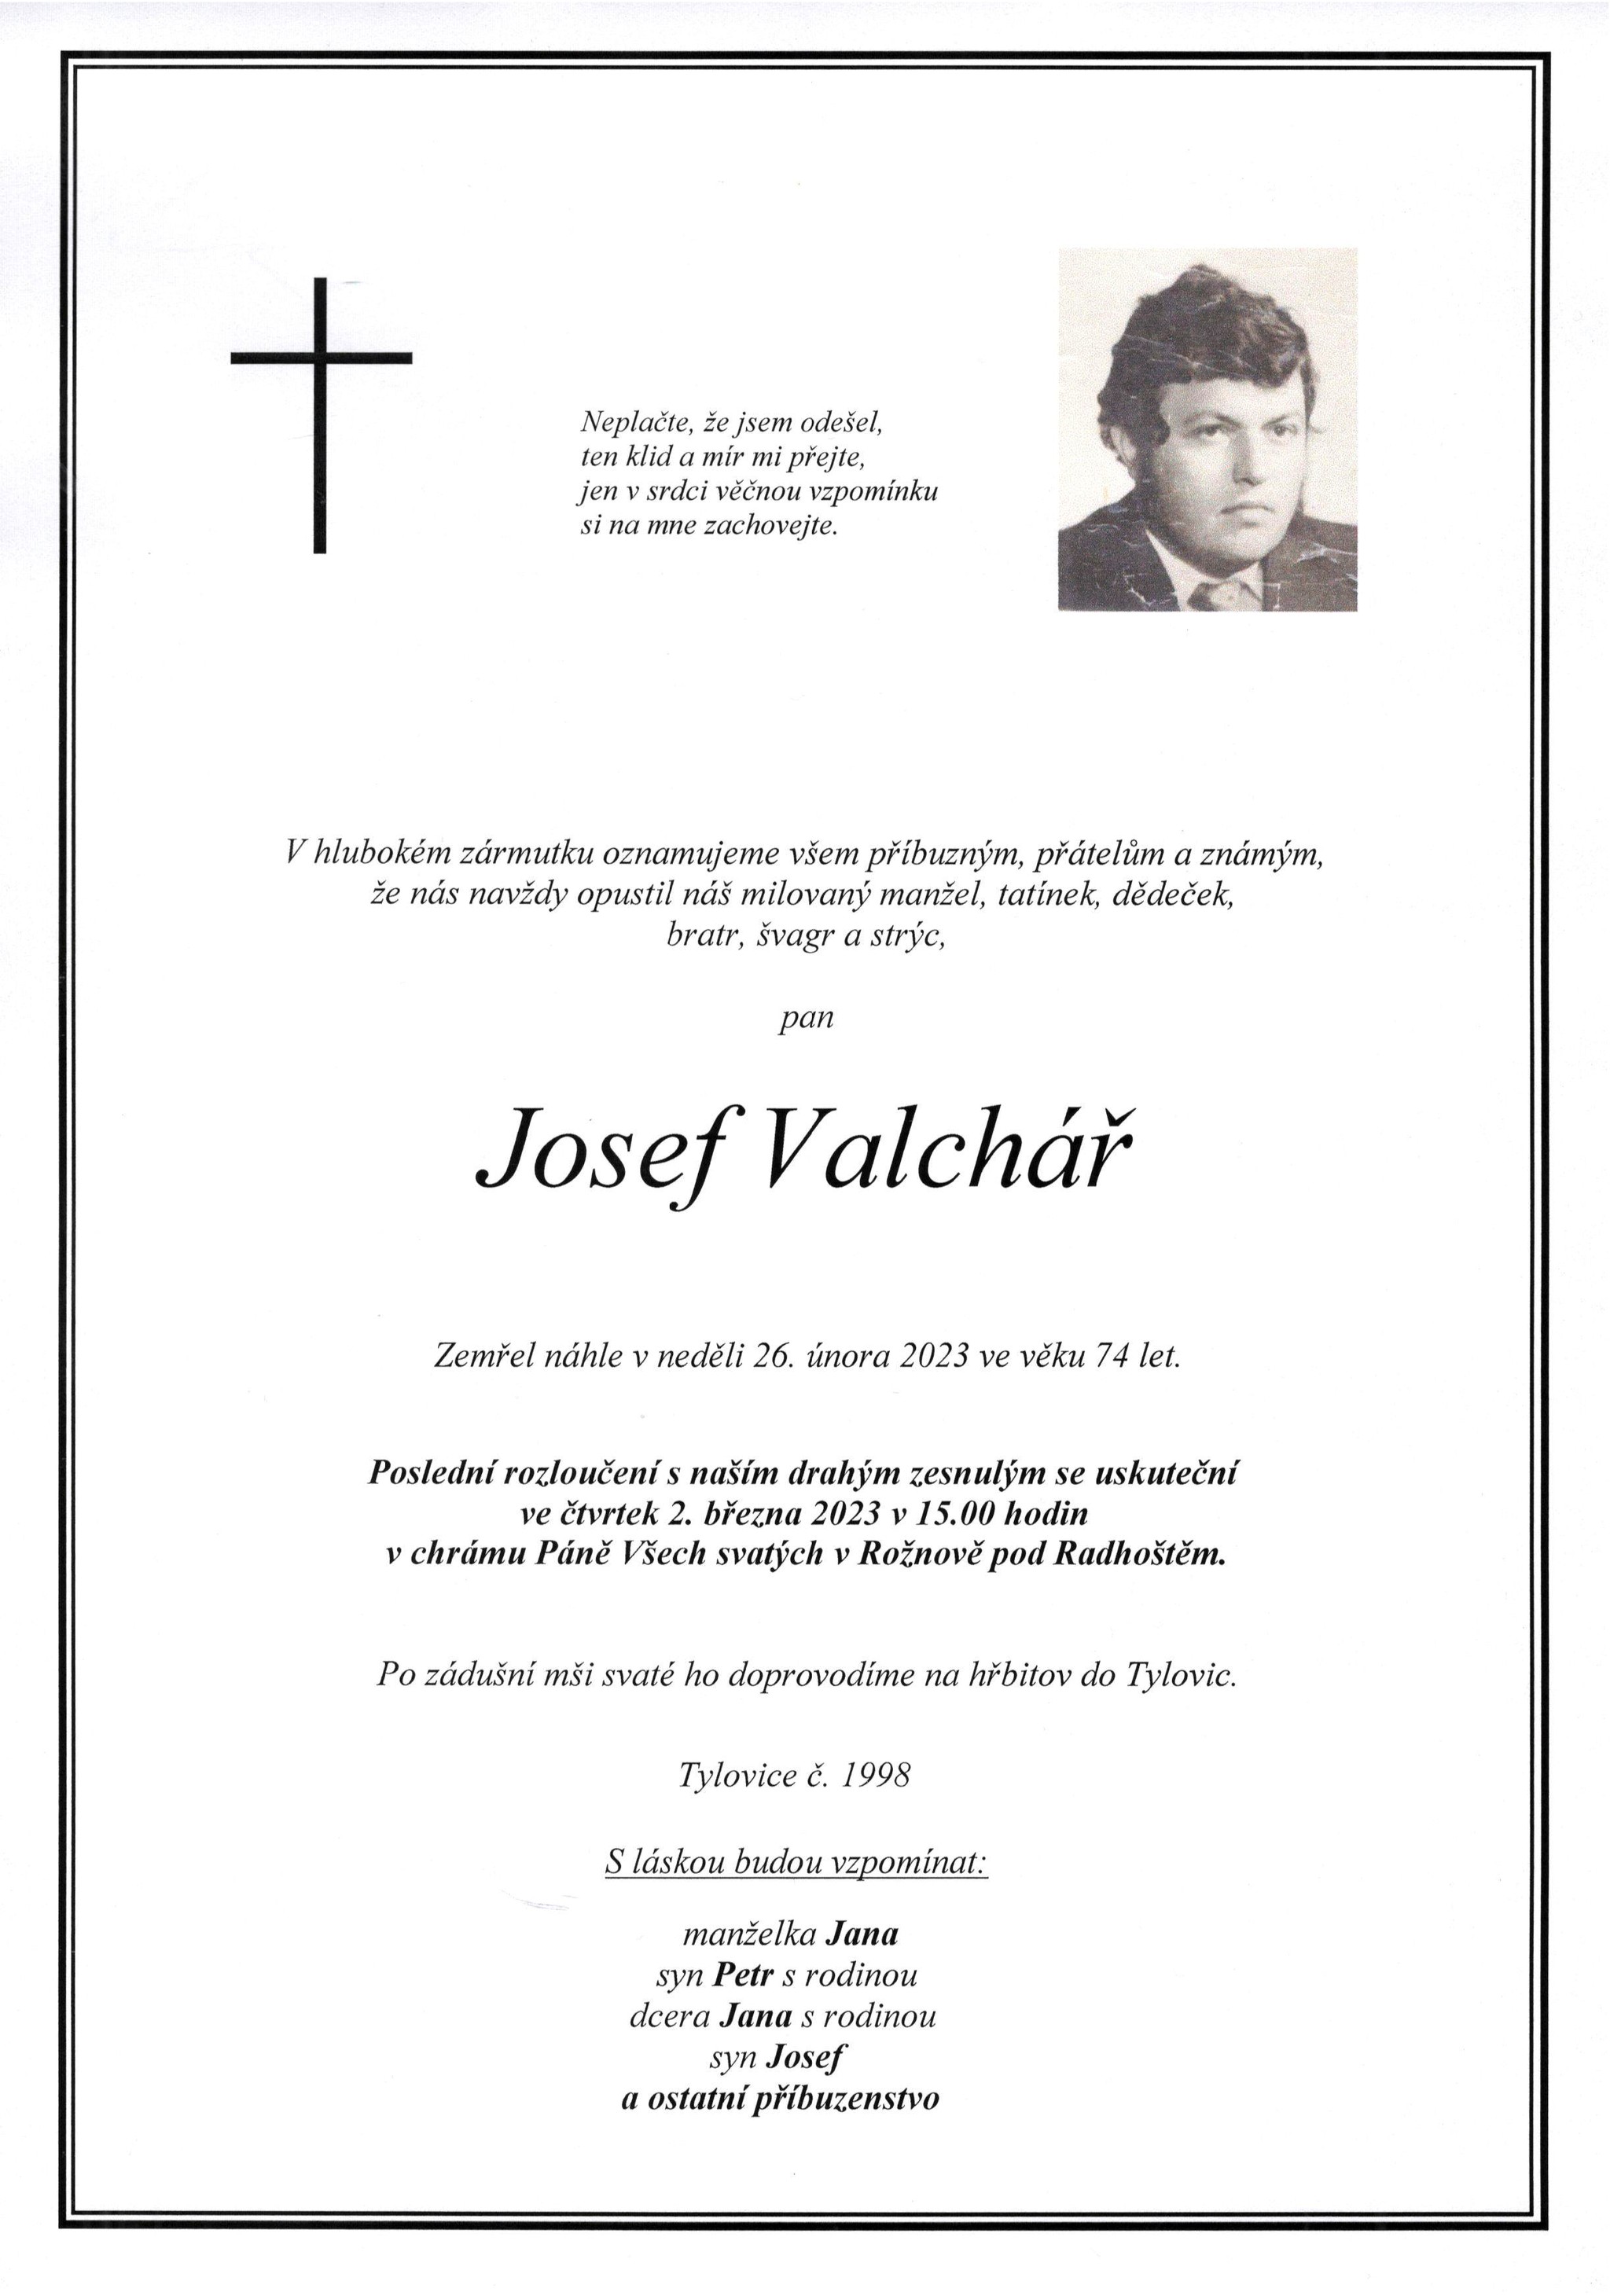 Josef Valchář